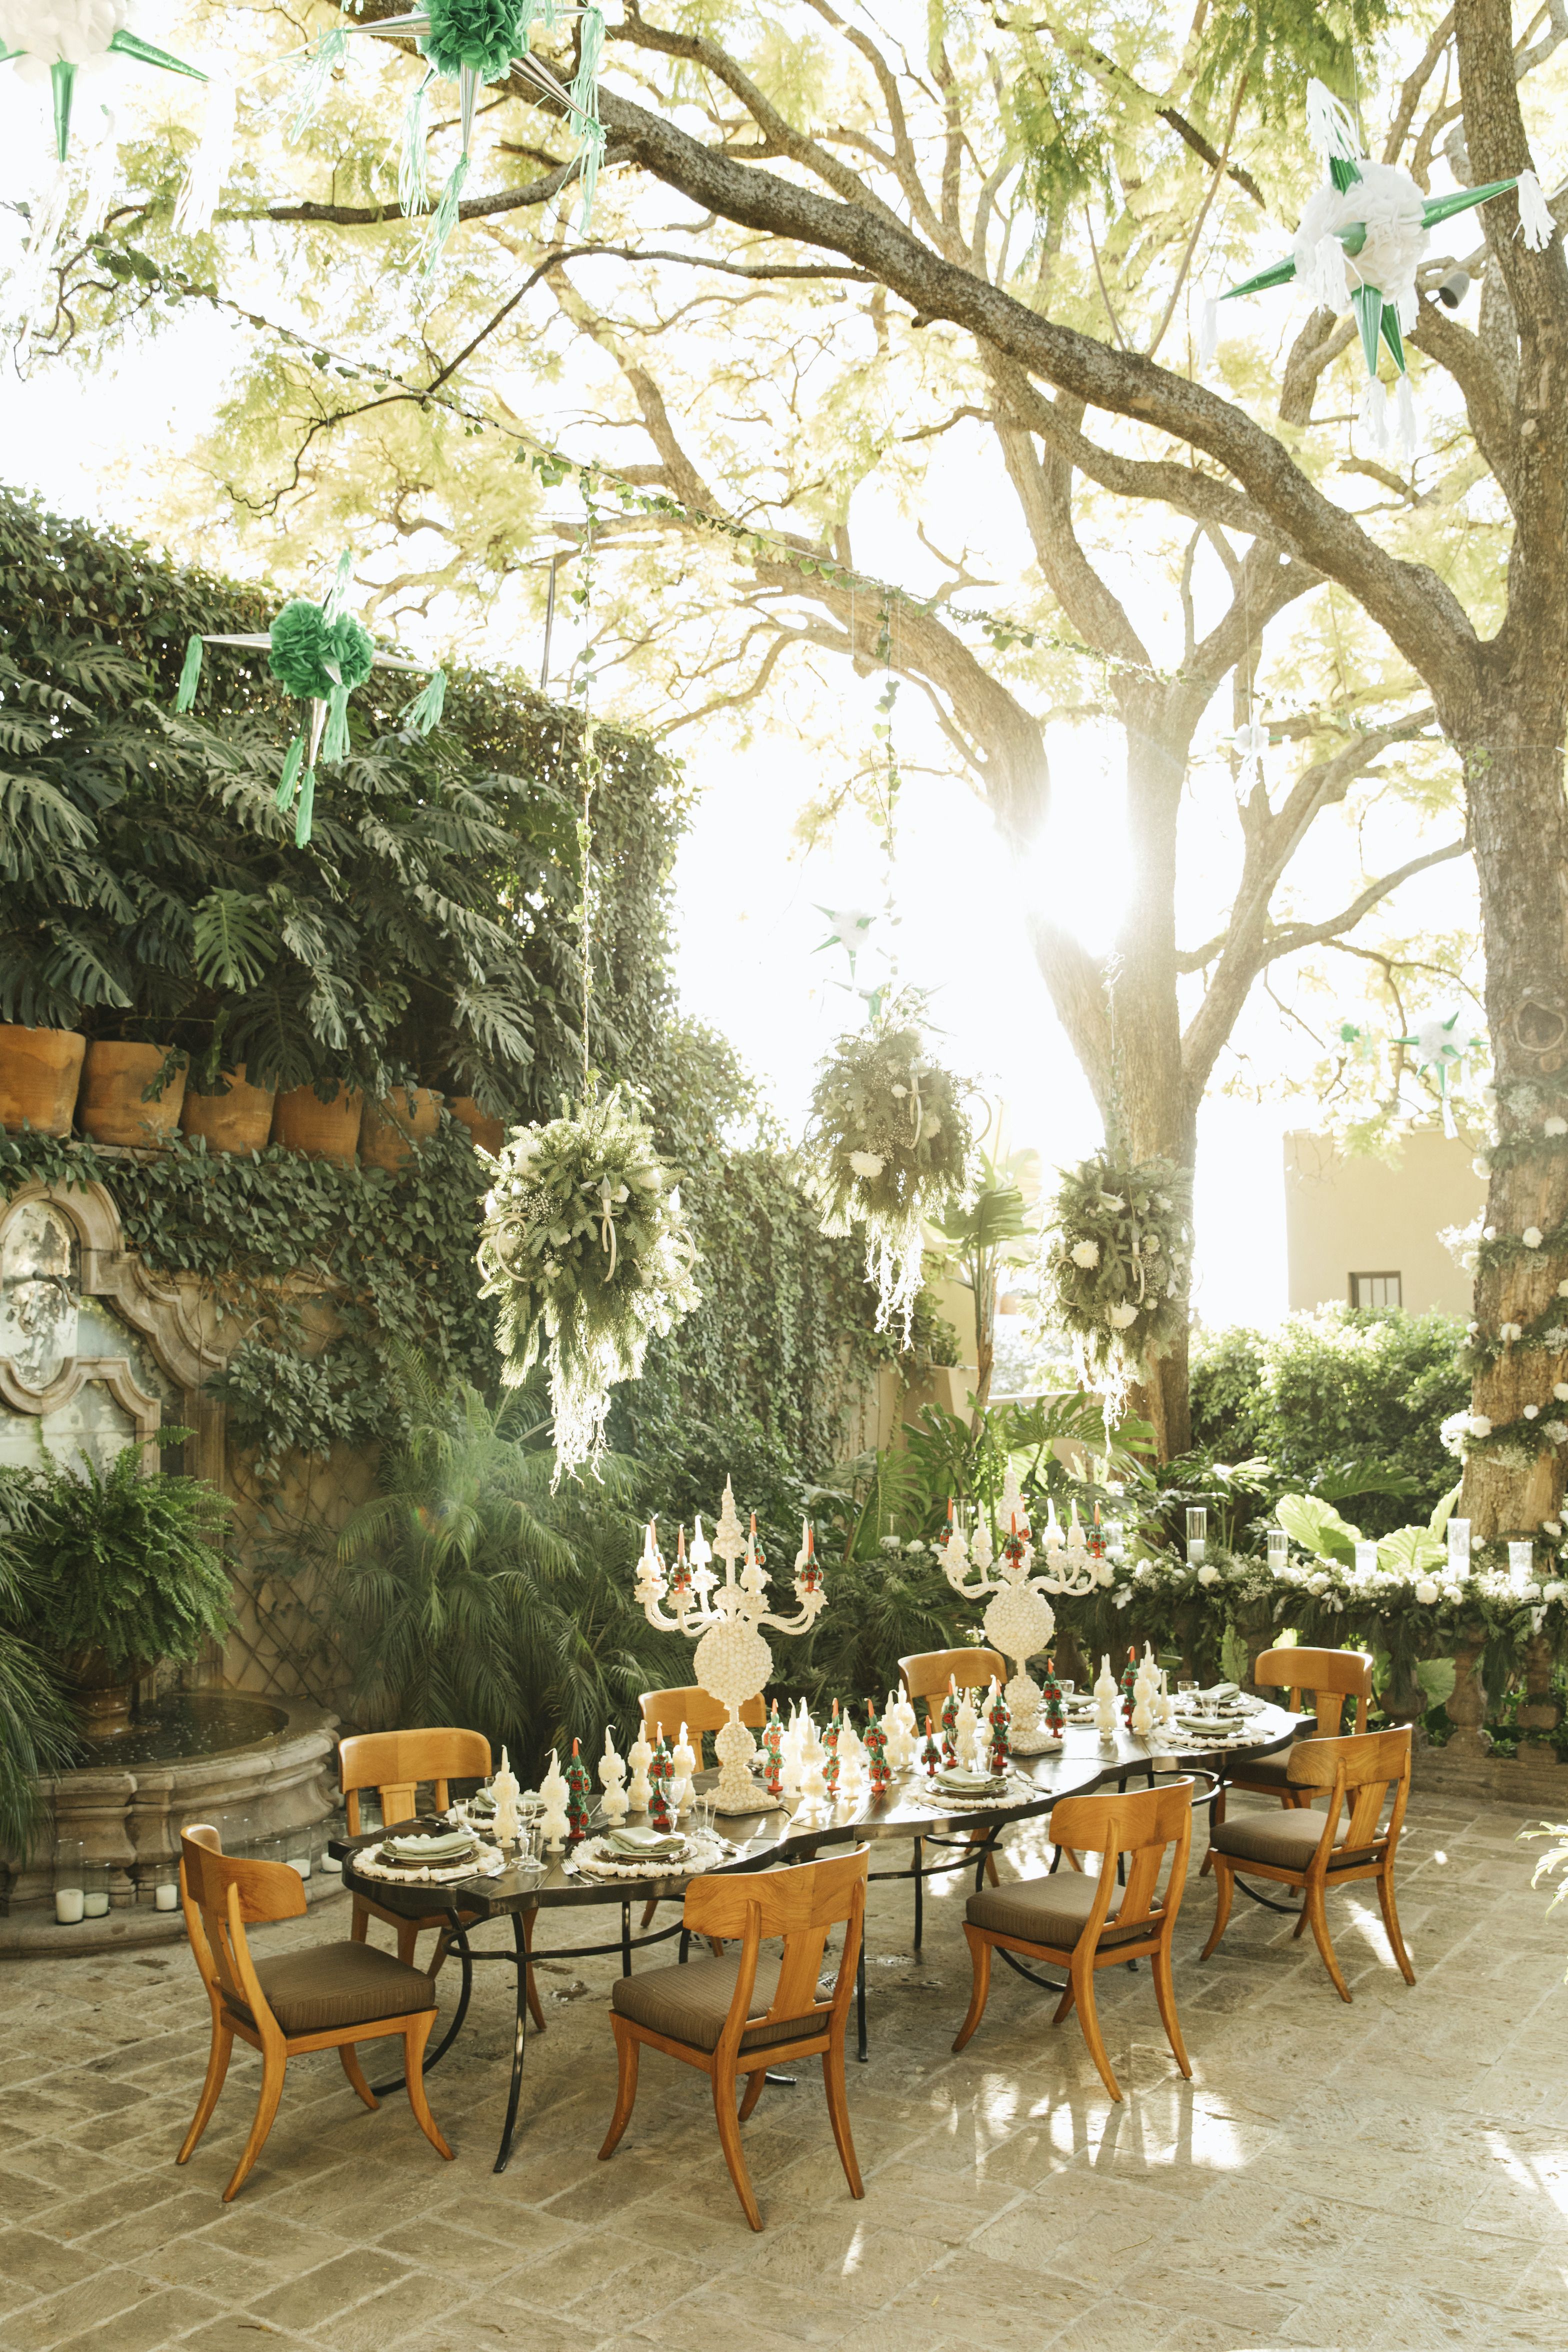 40 Best Outdoor Rooms - Pretty Gazebos, Gardens & Outdoor Spaces